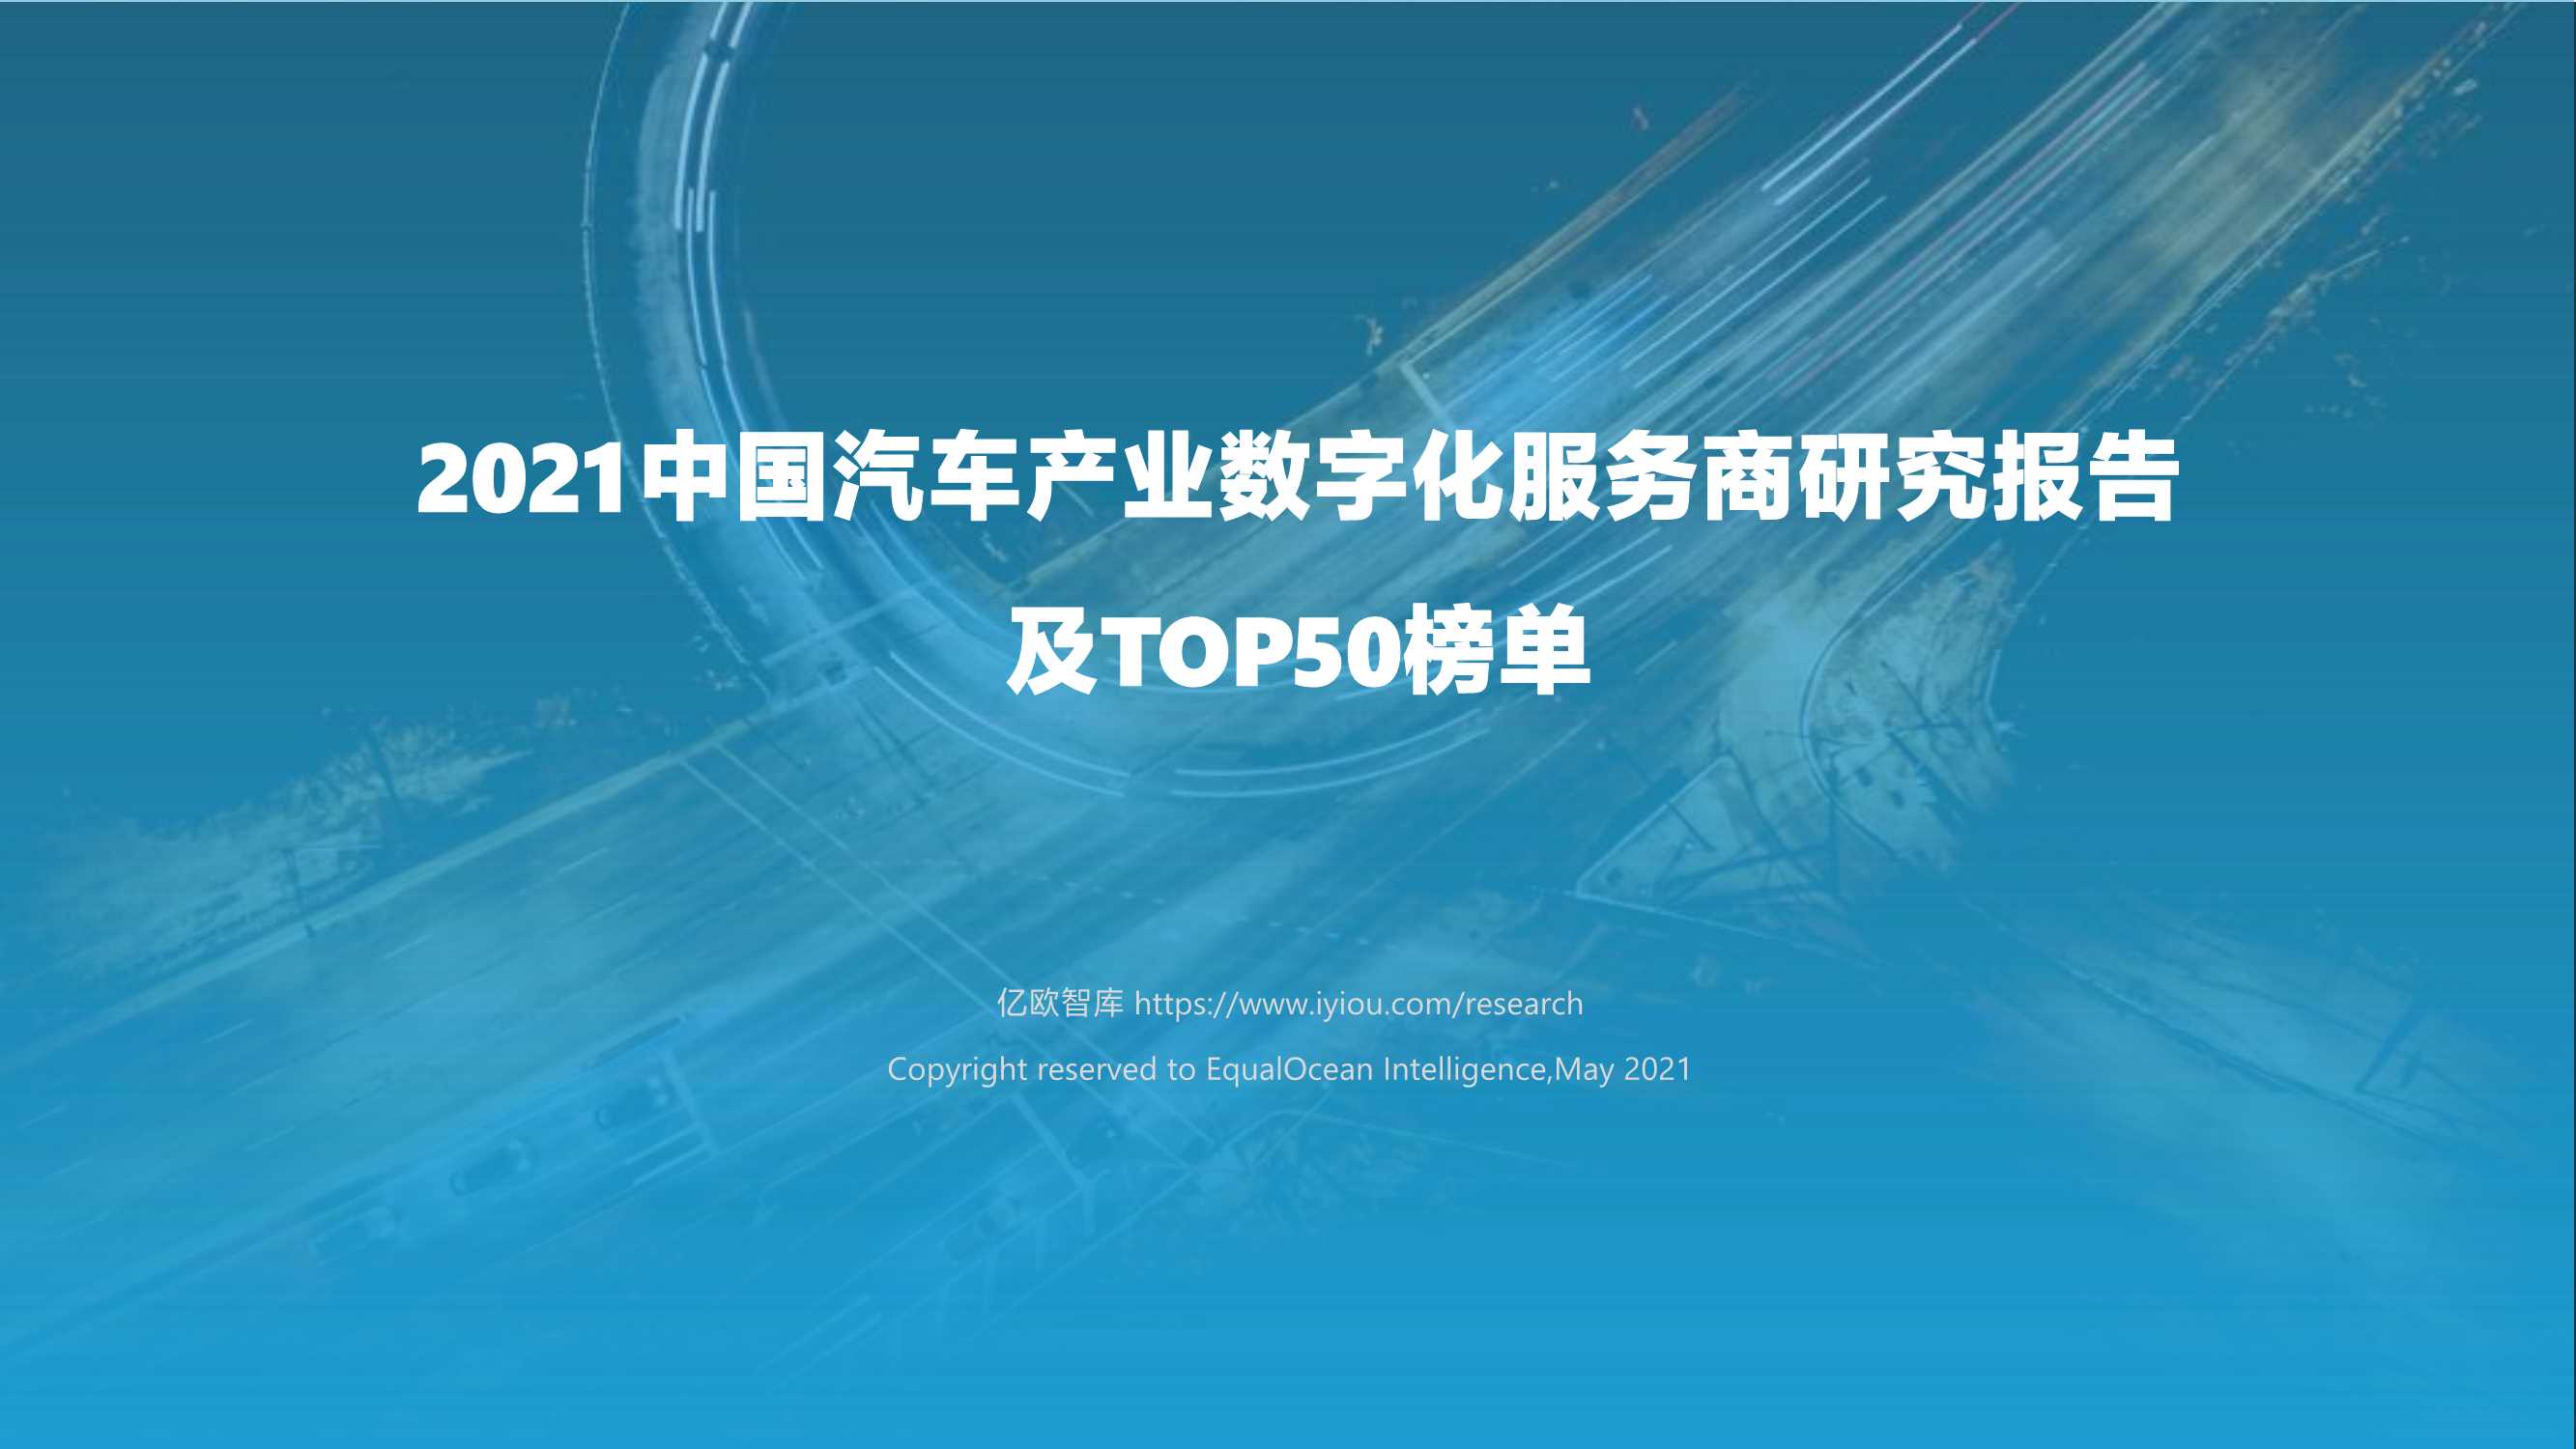 亿欧-中国汽车产业数字化服务商研究报告及TOP50榜单-2021.05-43页